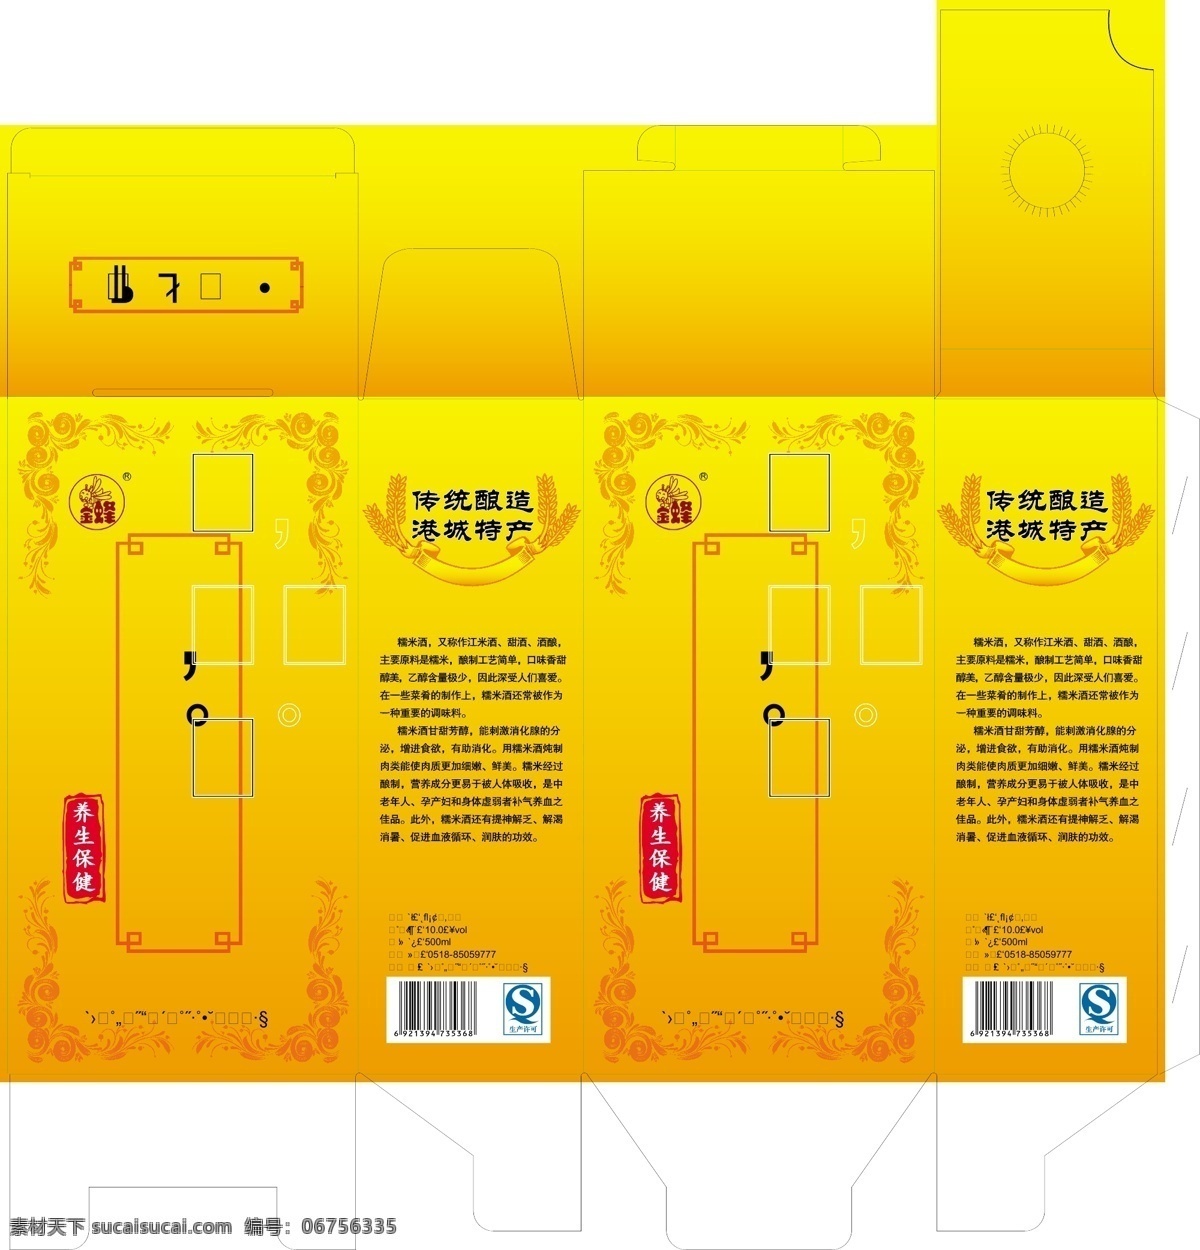 米酒 酒盒 包装盒 包装设计 花边 花纹 黄底纹 酒 糯米 米酒酒盒 包装手提盒 矢量 psd源文件